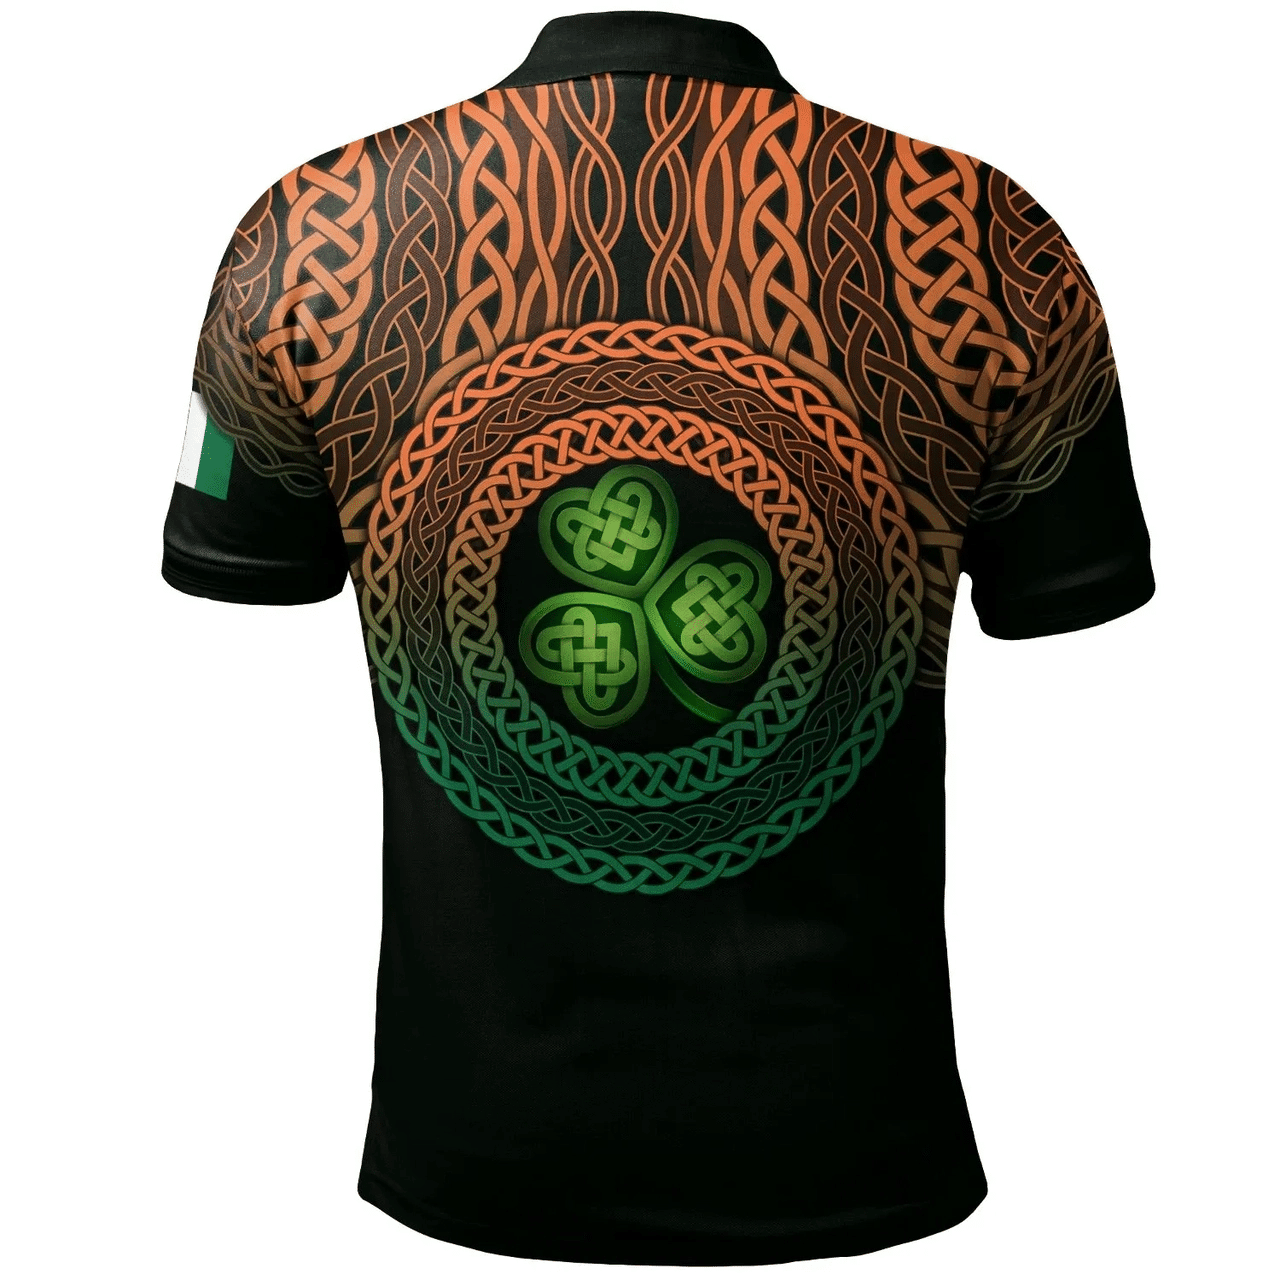 1stIreland Ireland Polo Shirt - Fergus or O'Fearghus Irish Family Crest Polo Shirt - Celtic Pride A7 | 1stIreland.com